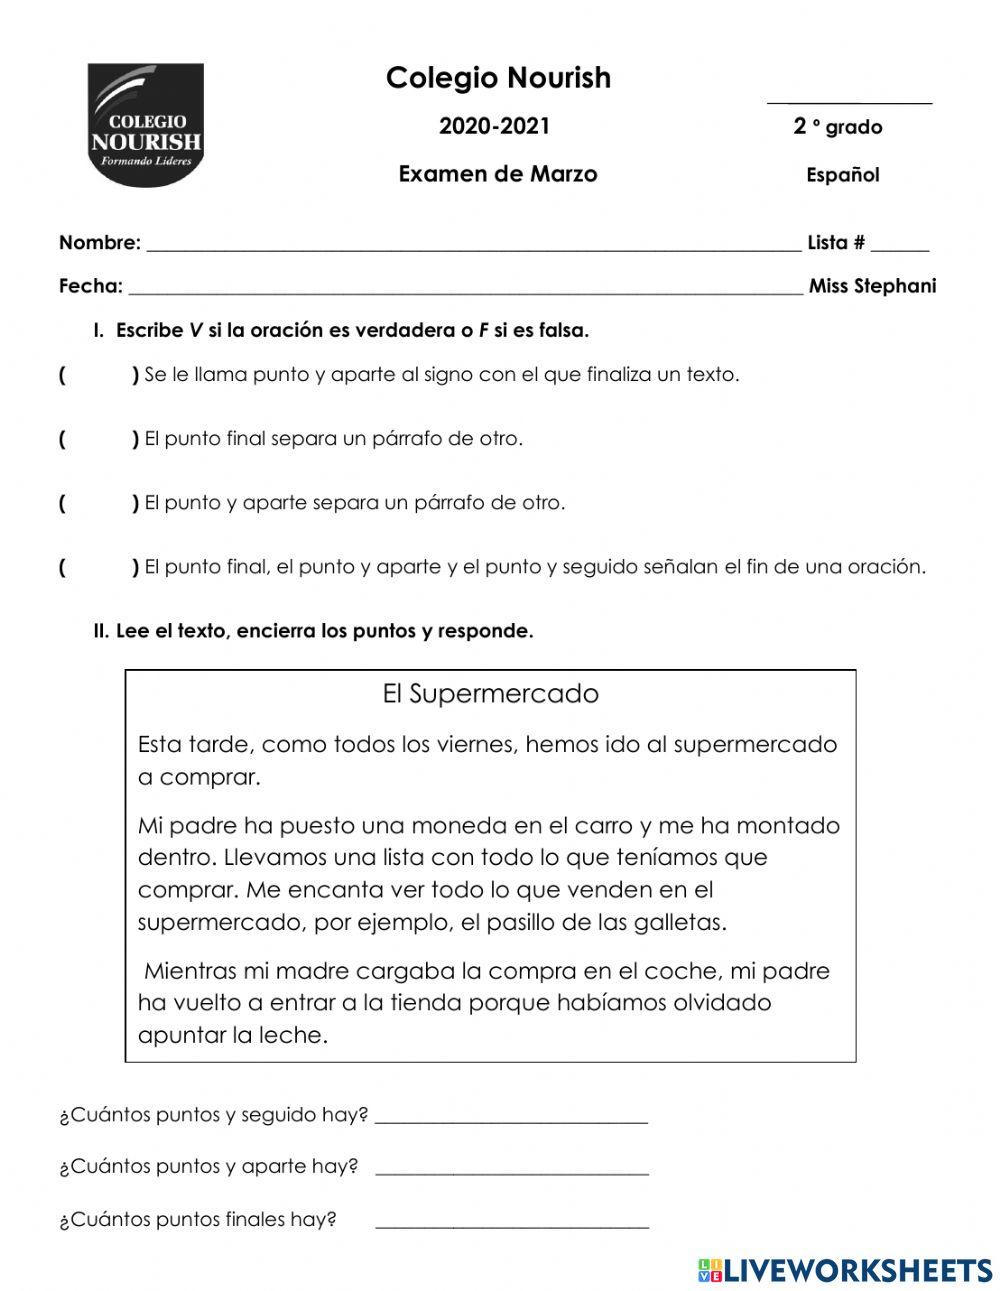 Examen de español 2°